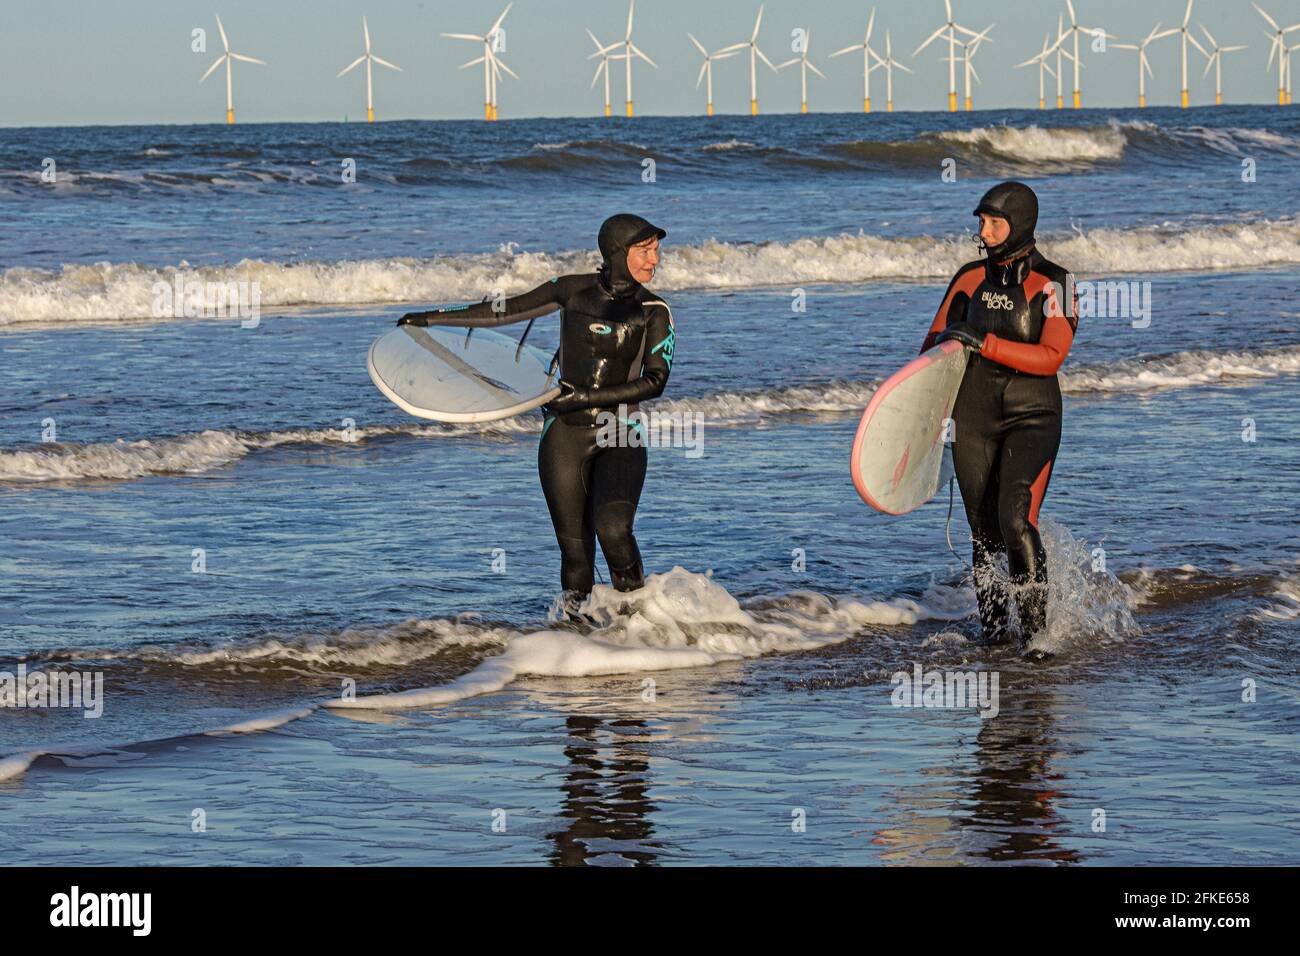 Olivia Harris (izquierda) y su amiga Rachel surfing en Seaton con Teesside Offshore Windfarm en distancia. Inglaterra, Reino Unido Foto de stock